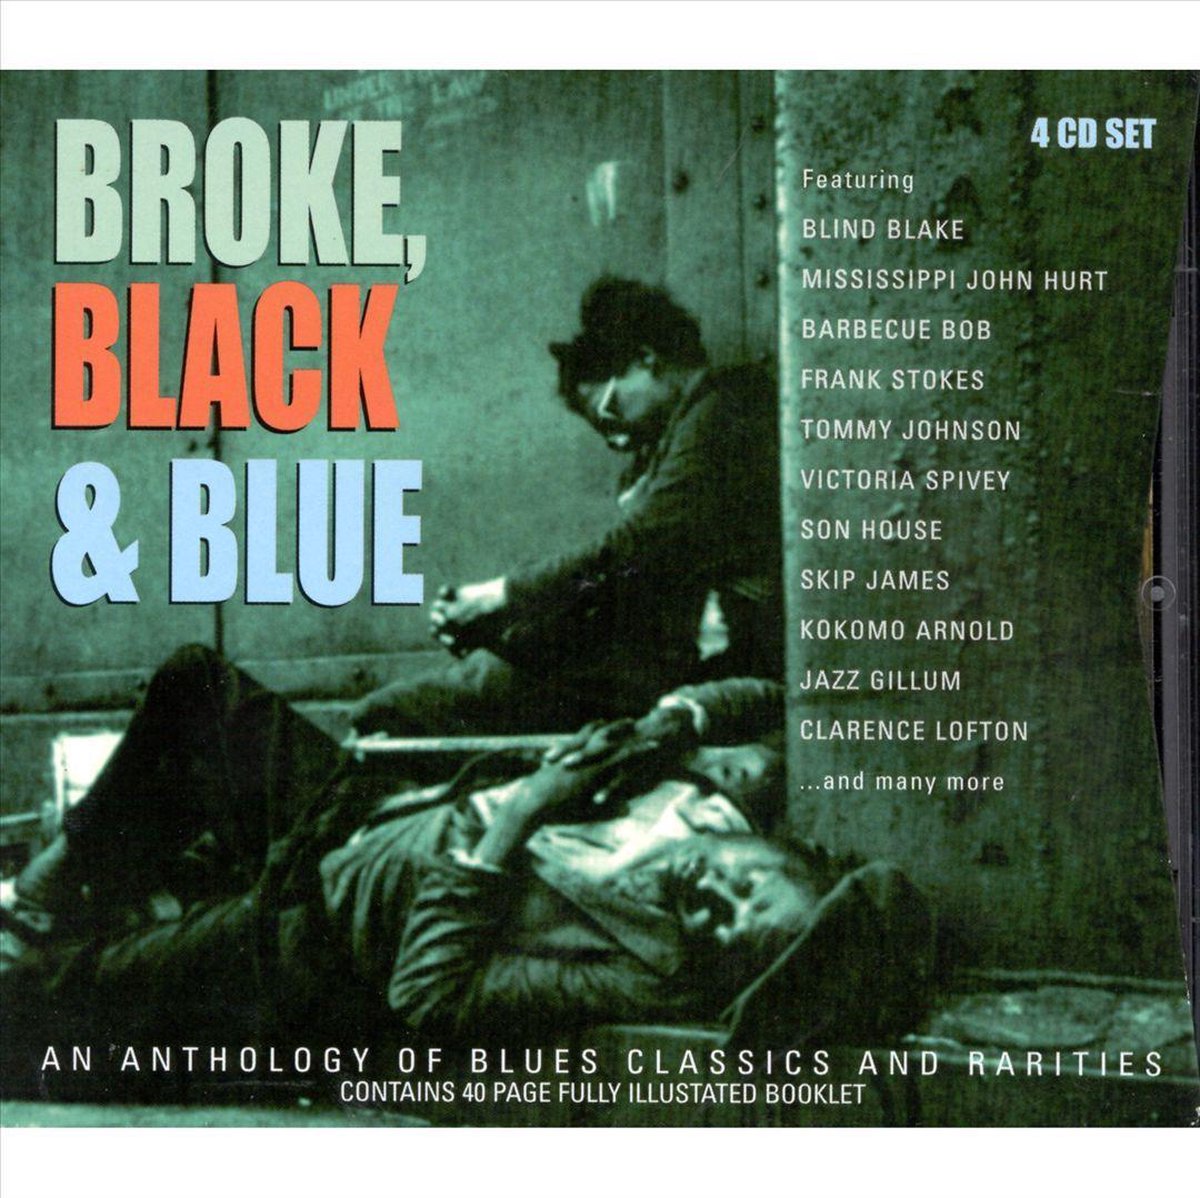 Broke, Black & Blue - various artists